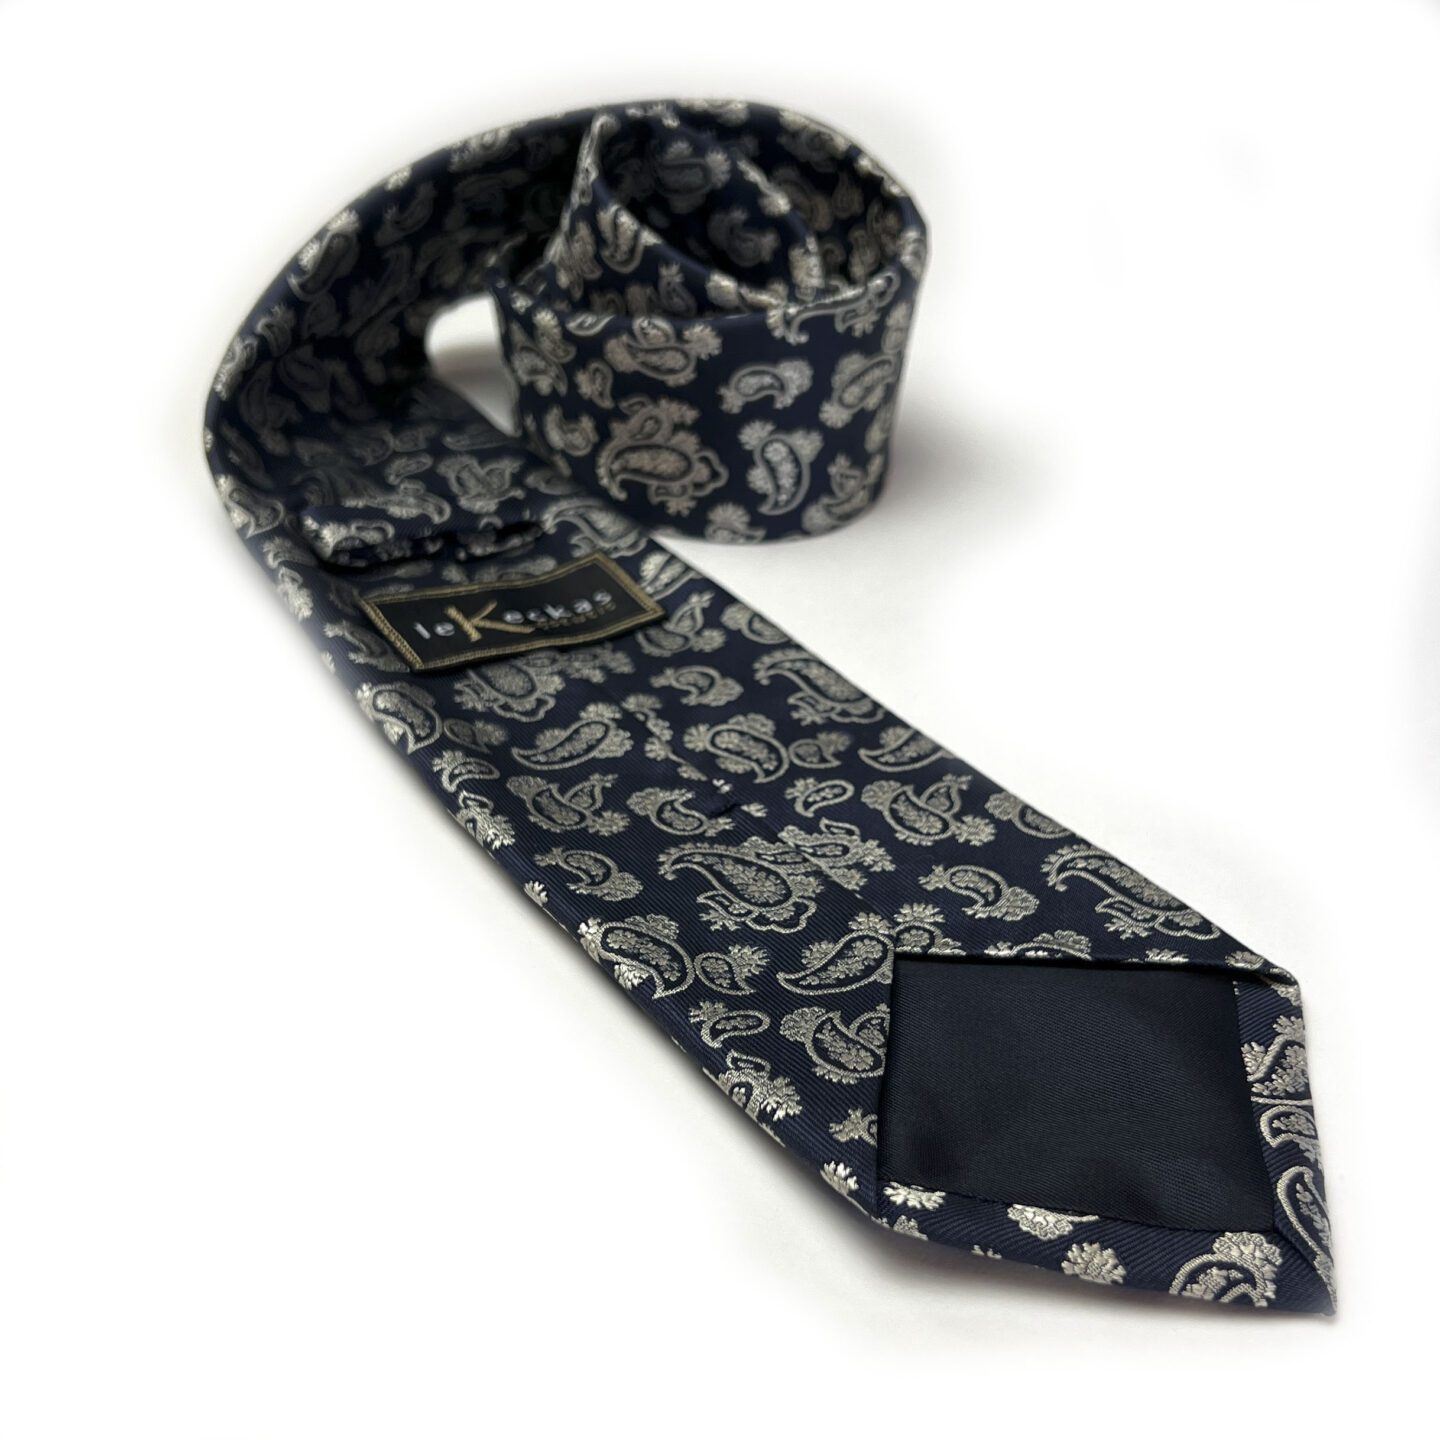 Tamsiai mėlynas vyriškas kaklaraištis puoštas kreminiu "paisley" raštu